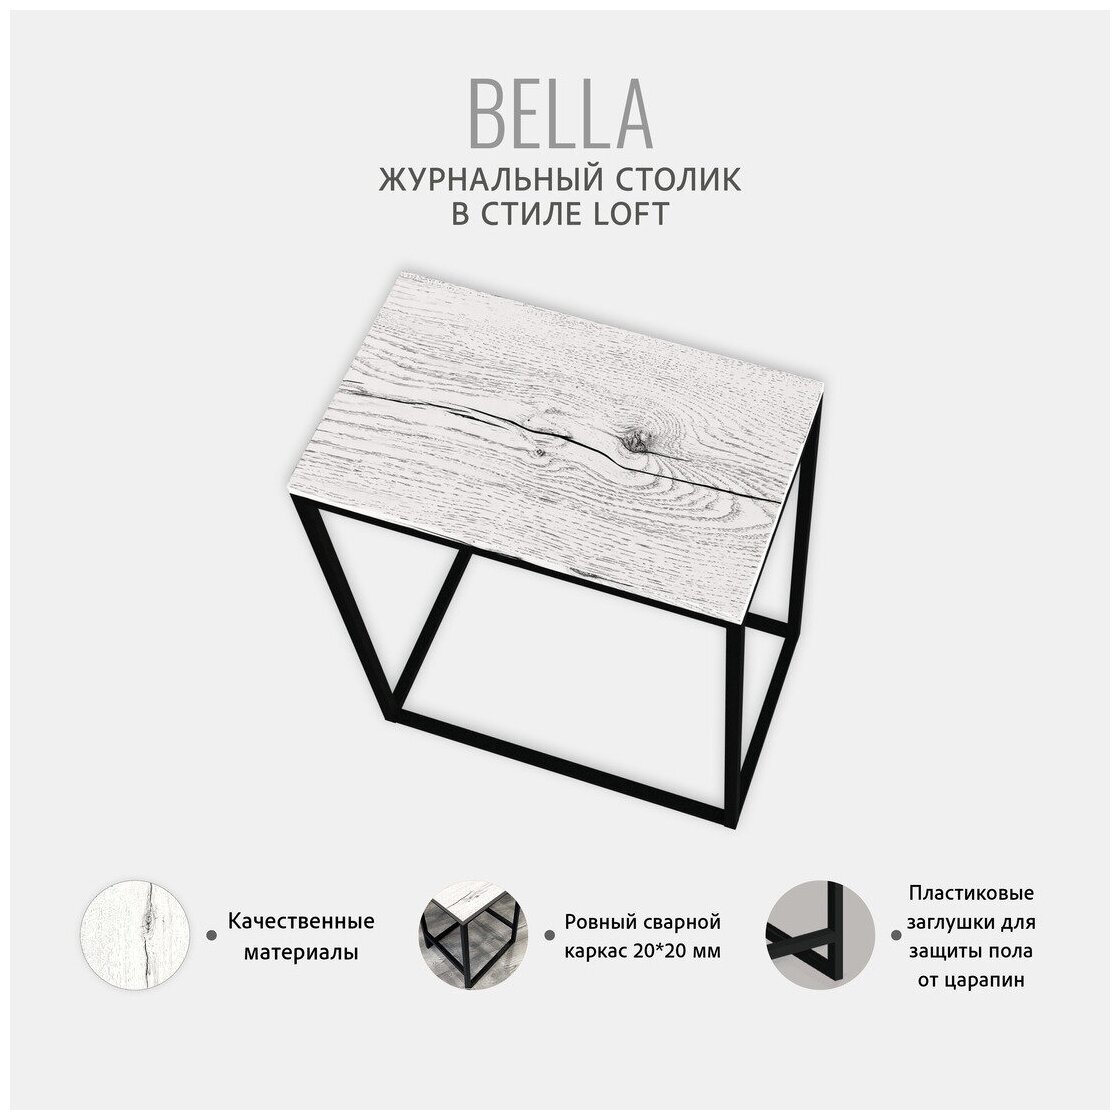 Консольный столик светло-серый, консоль мебельная, столик журнальный, приставной столик, 60x50x30 см, BELLA loft, Гростат - фотография № 4